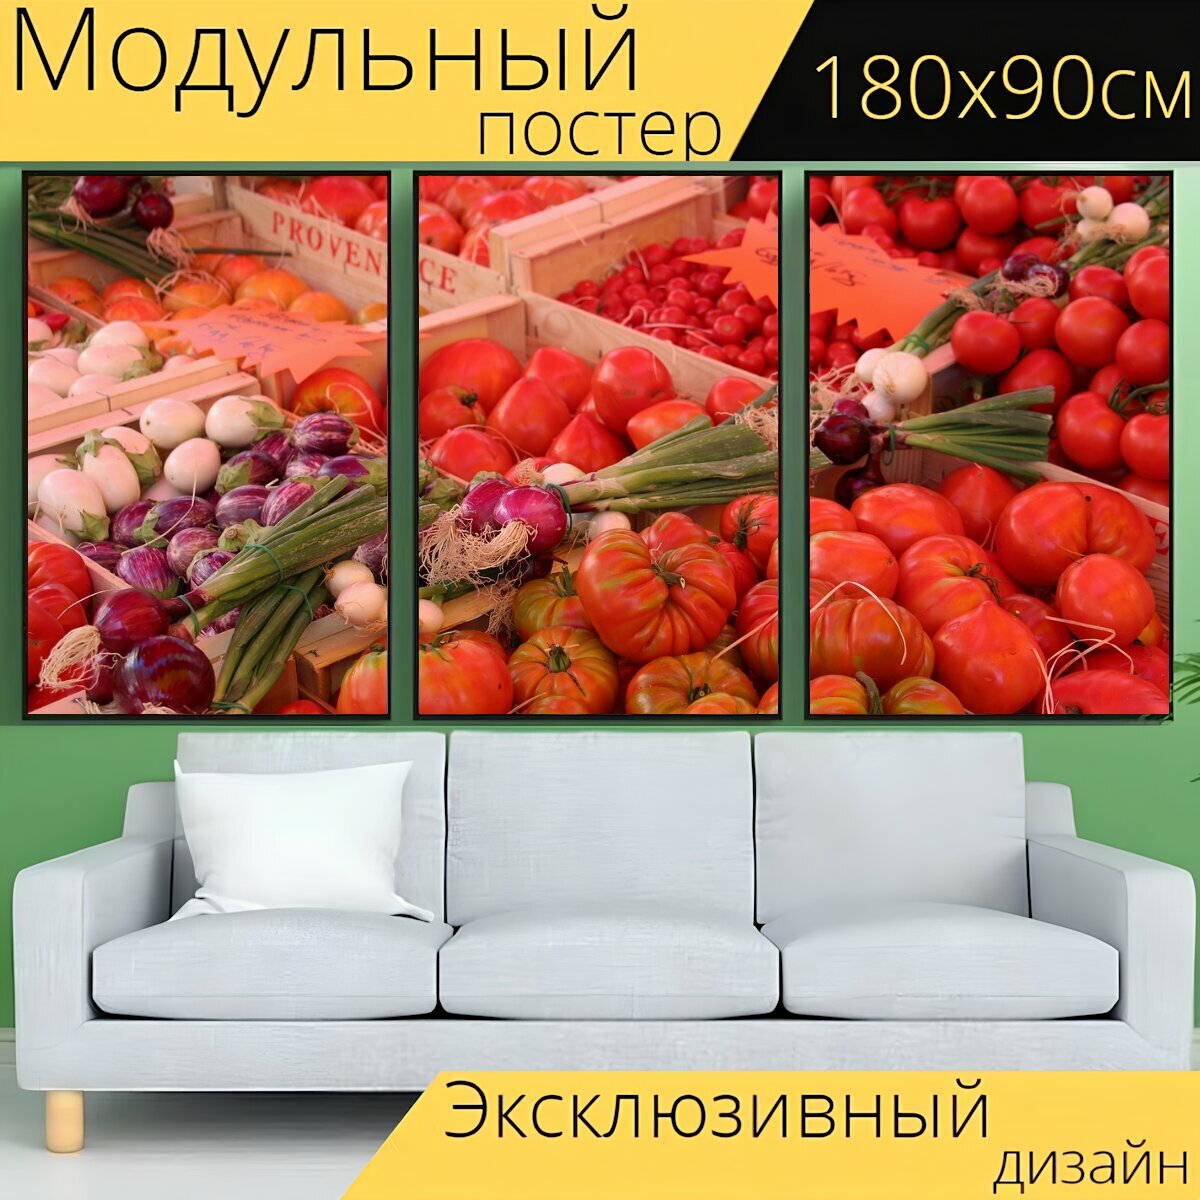 Модульный постер "Овощи, помидоры, рынок" 180 x 90 см. для интерьера